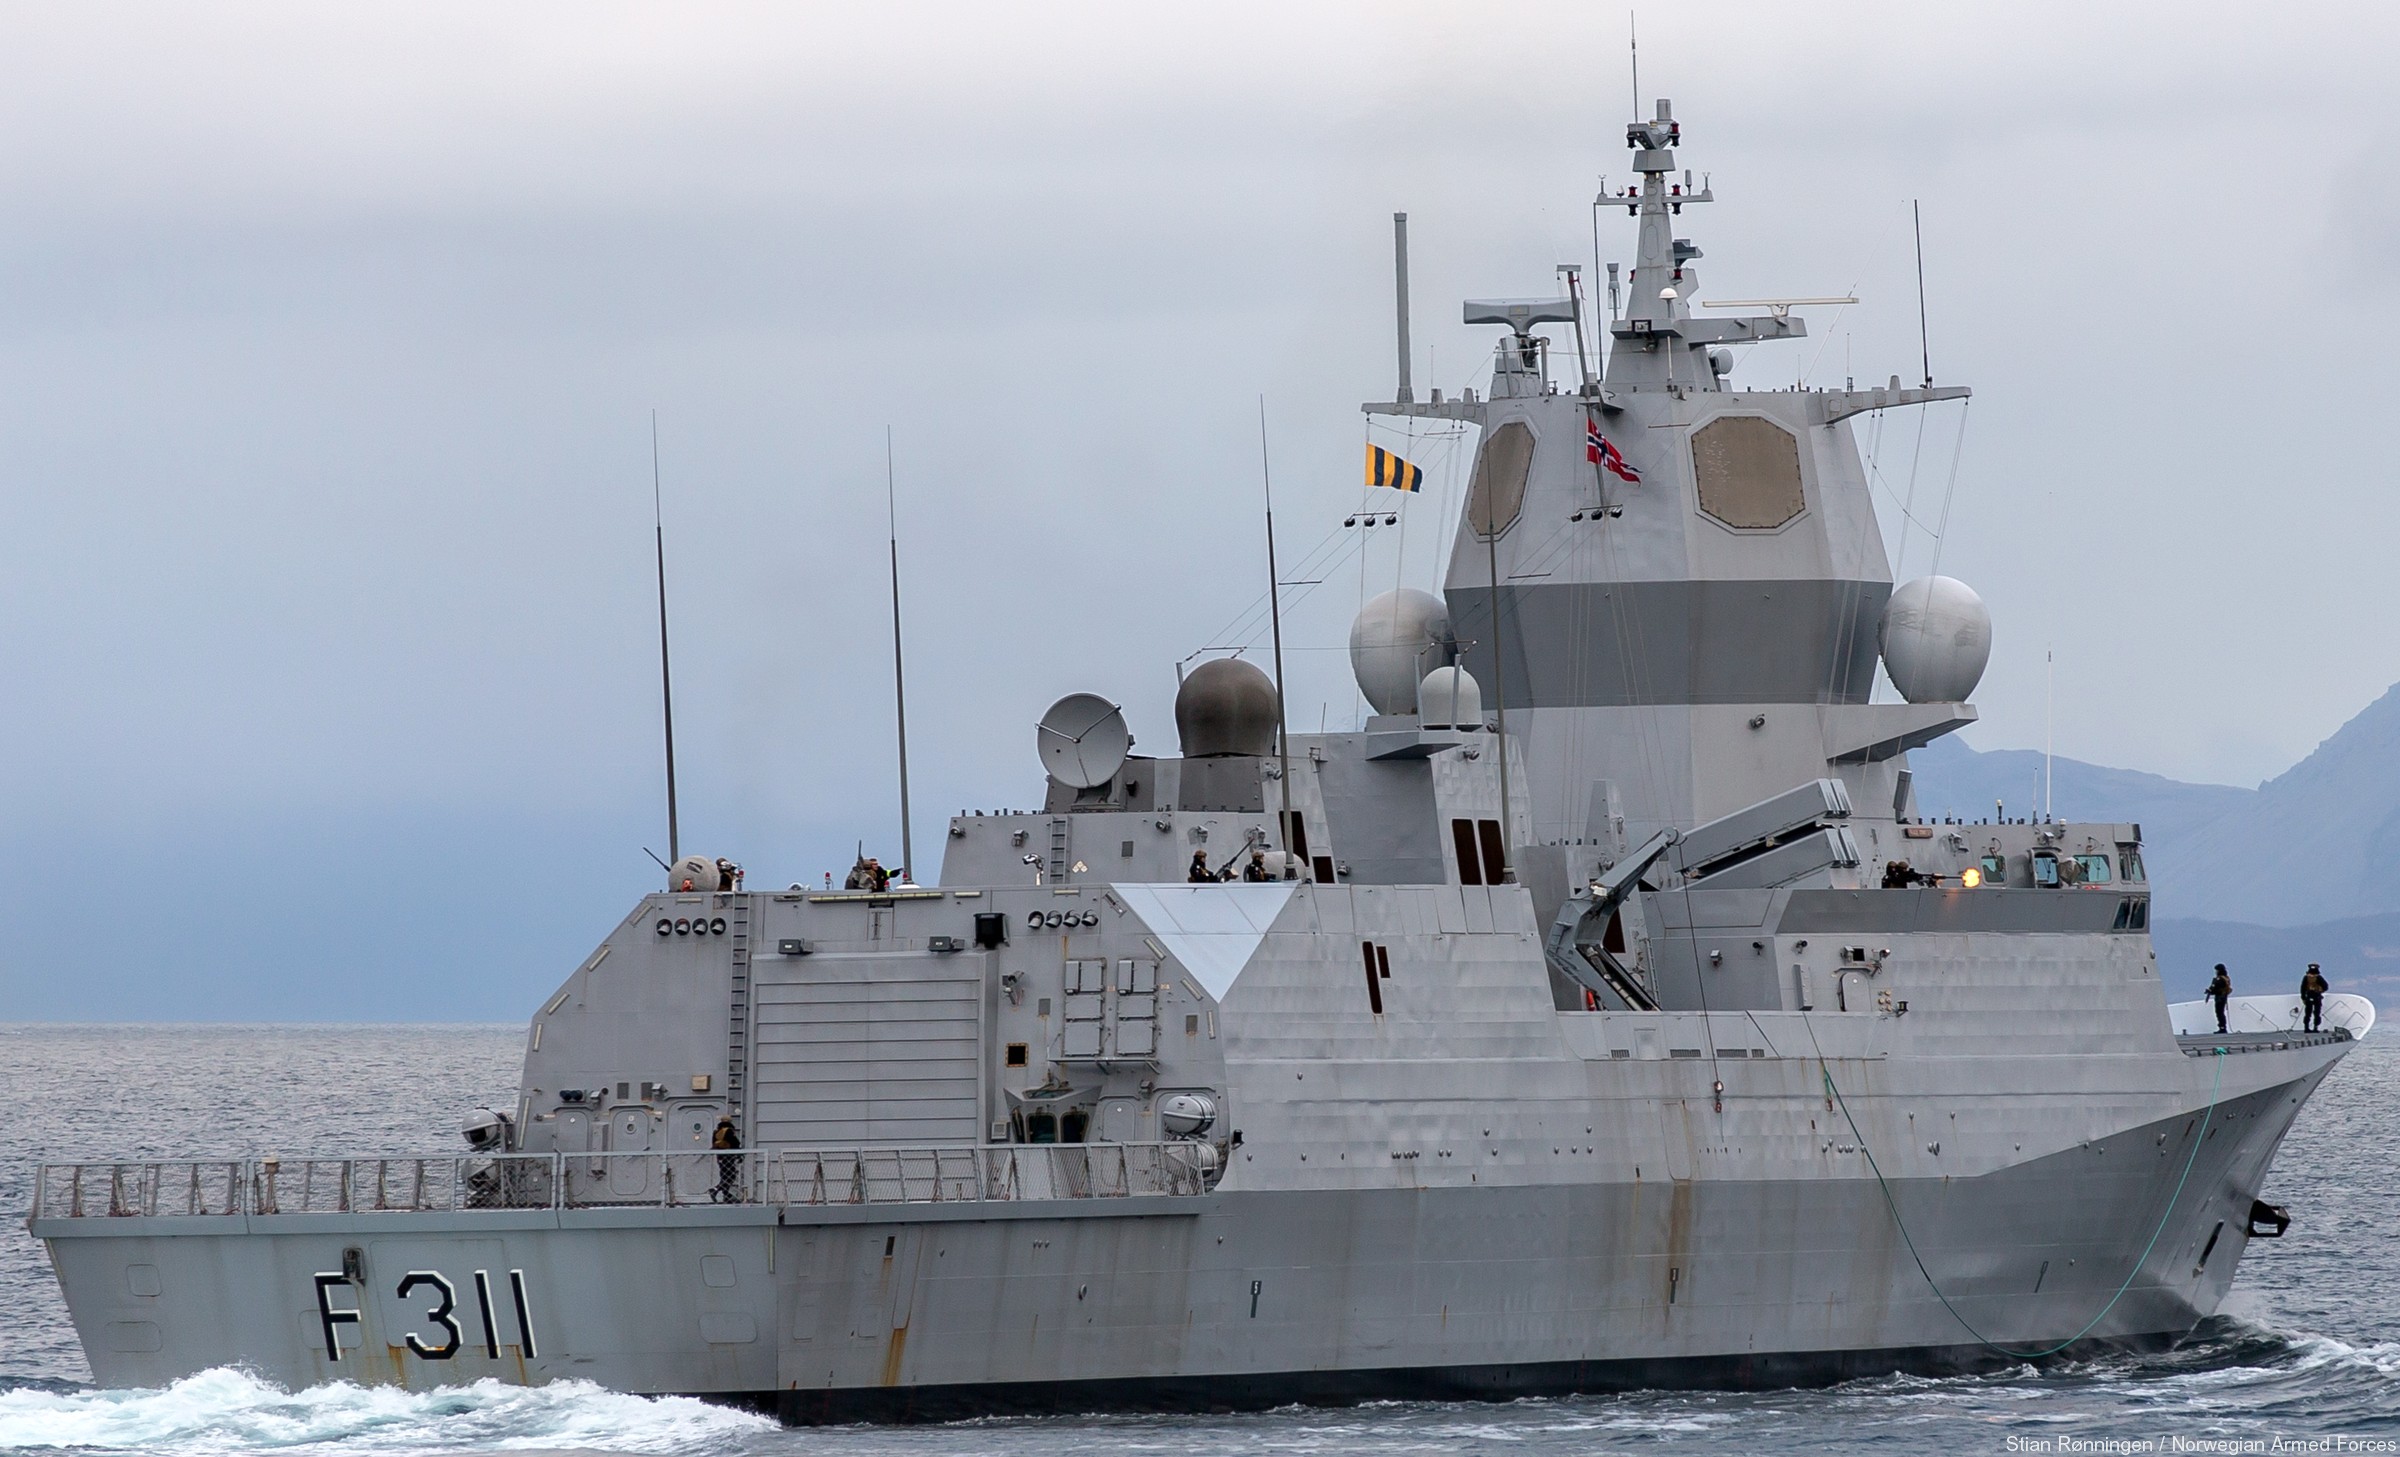 f-311 hnoms roald amundsen knm nansen class frigate royal norwegian navy sjoforsvaret 61